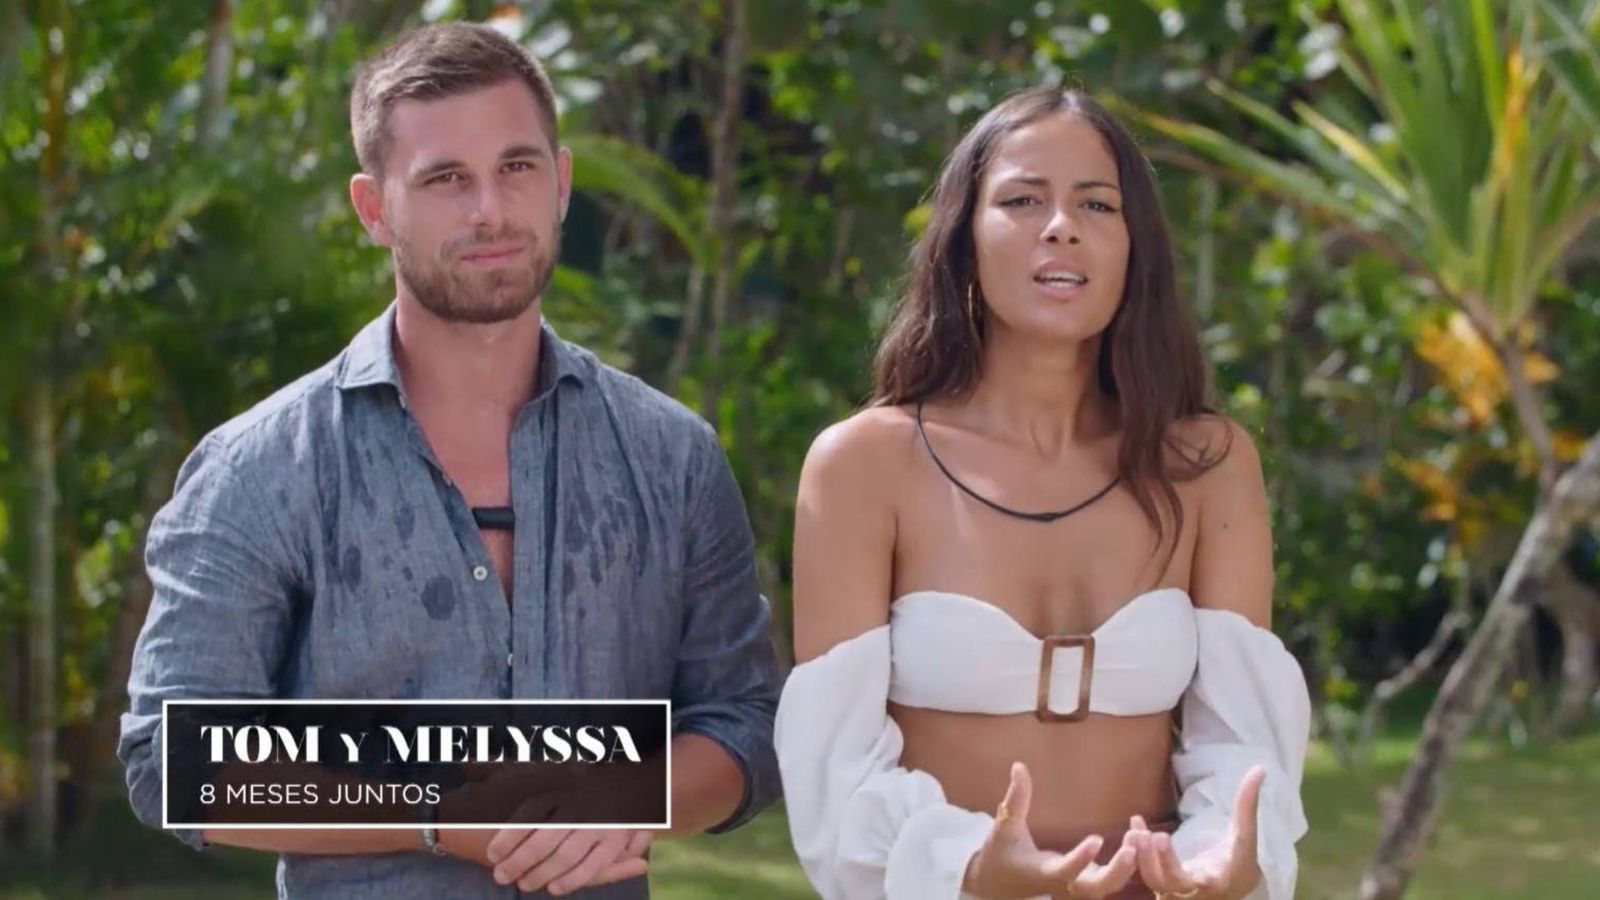 QuiÃ©nes son Tom y Melyssa, la pareja de 'La isla de las tentaciones 2'?